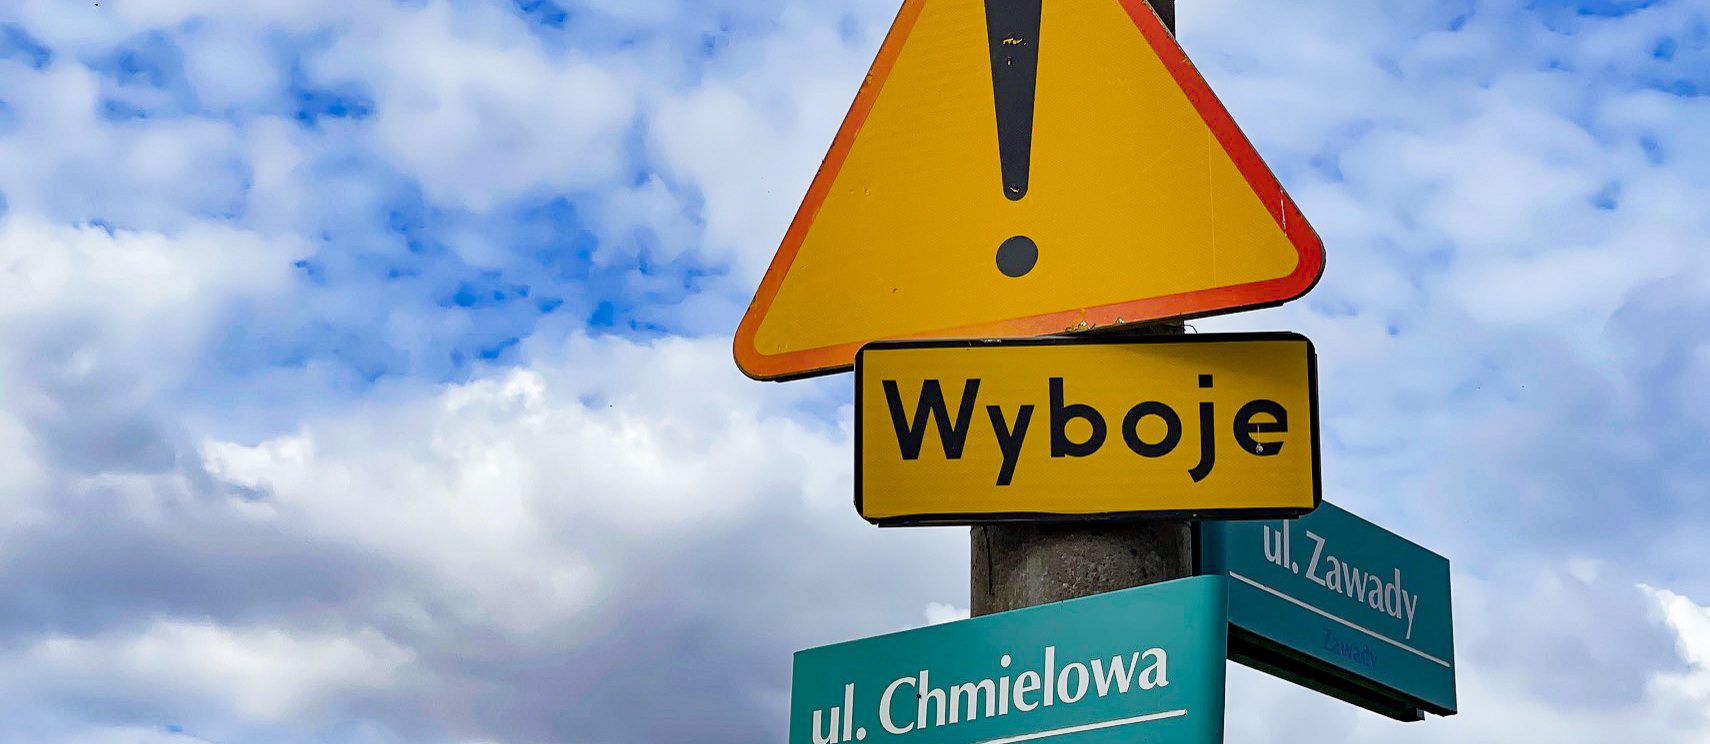 Słup ze znakami drogowymi informującymi o wybojach oraz z nazwami ulic: Chmielowa i Zawady